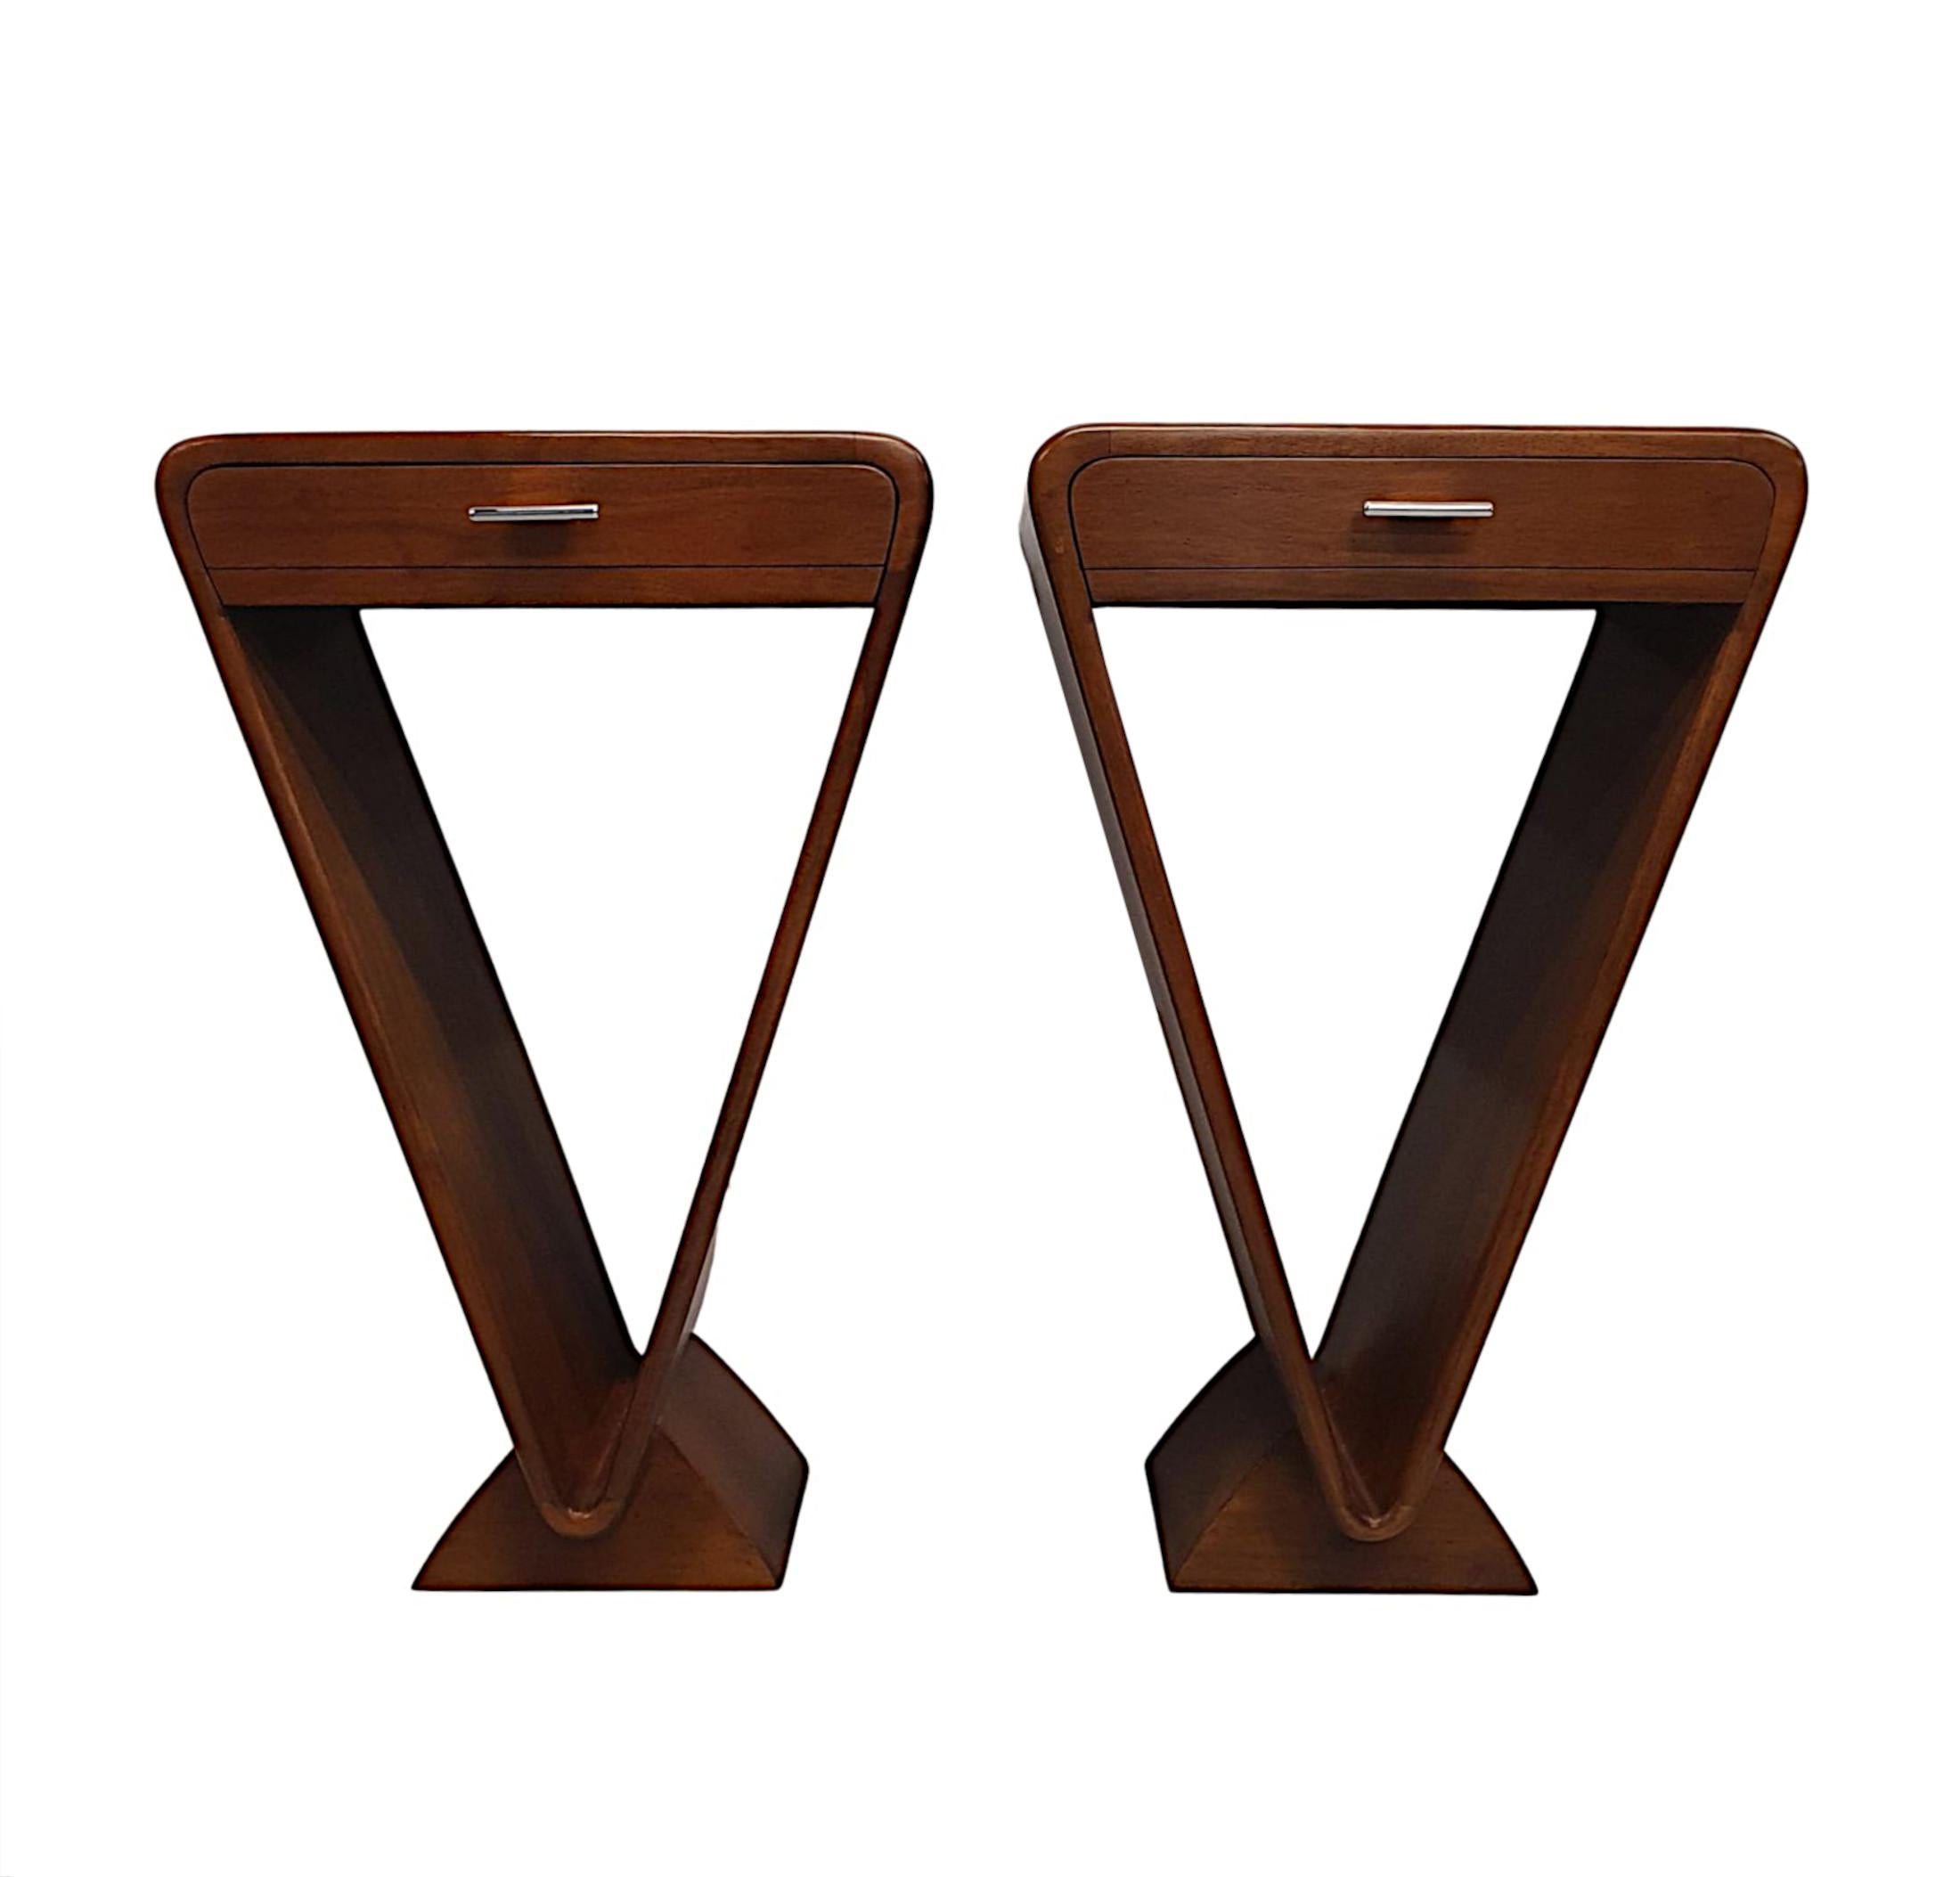 Une fabuleuse paire de tables de chevet ou d'appoint en merisier de style Art Déco, d'une qualité exceptionnelle avec un design curviligne et une superbe patine du bois.  Le plateau incurvé et mouluré est surmonté d'une frise à un seul tiroir